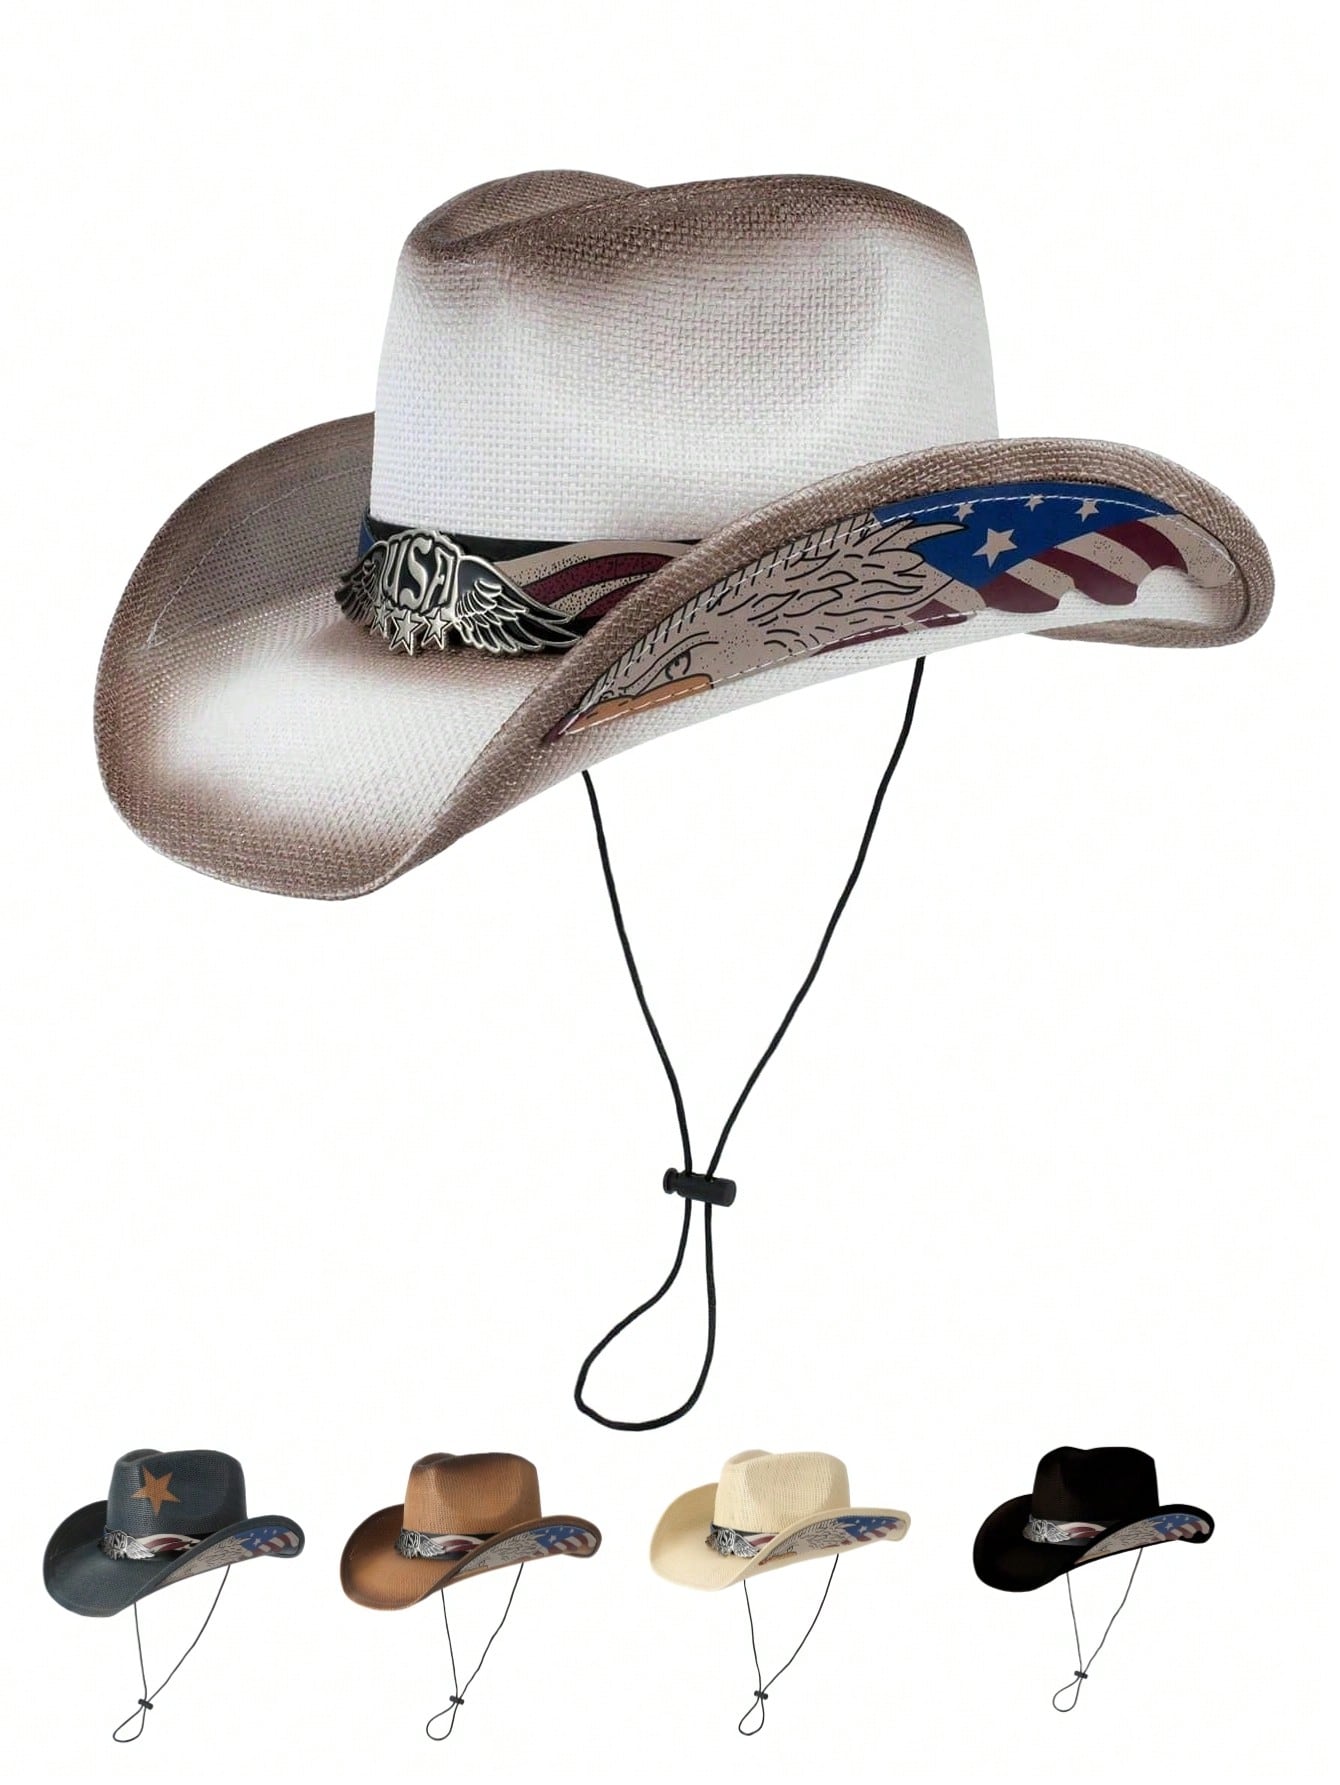 1шт Ковбойская шляпа в стиле вестерн с большими полями и лоскутным дизайном, многоцветный винтажная ковбойская шляпа в западном стиле фетровая шляпа с широкими полями джазовая шляпа для фото